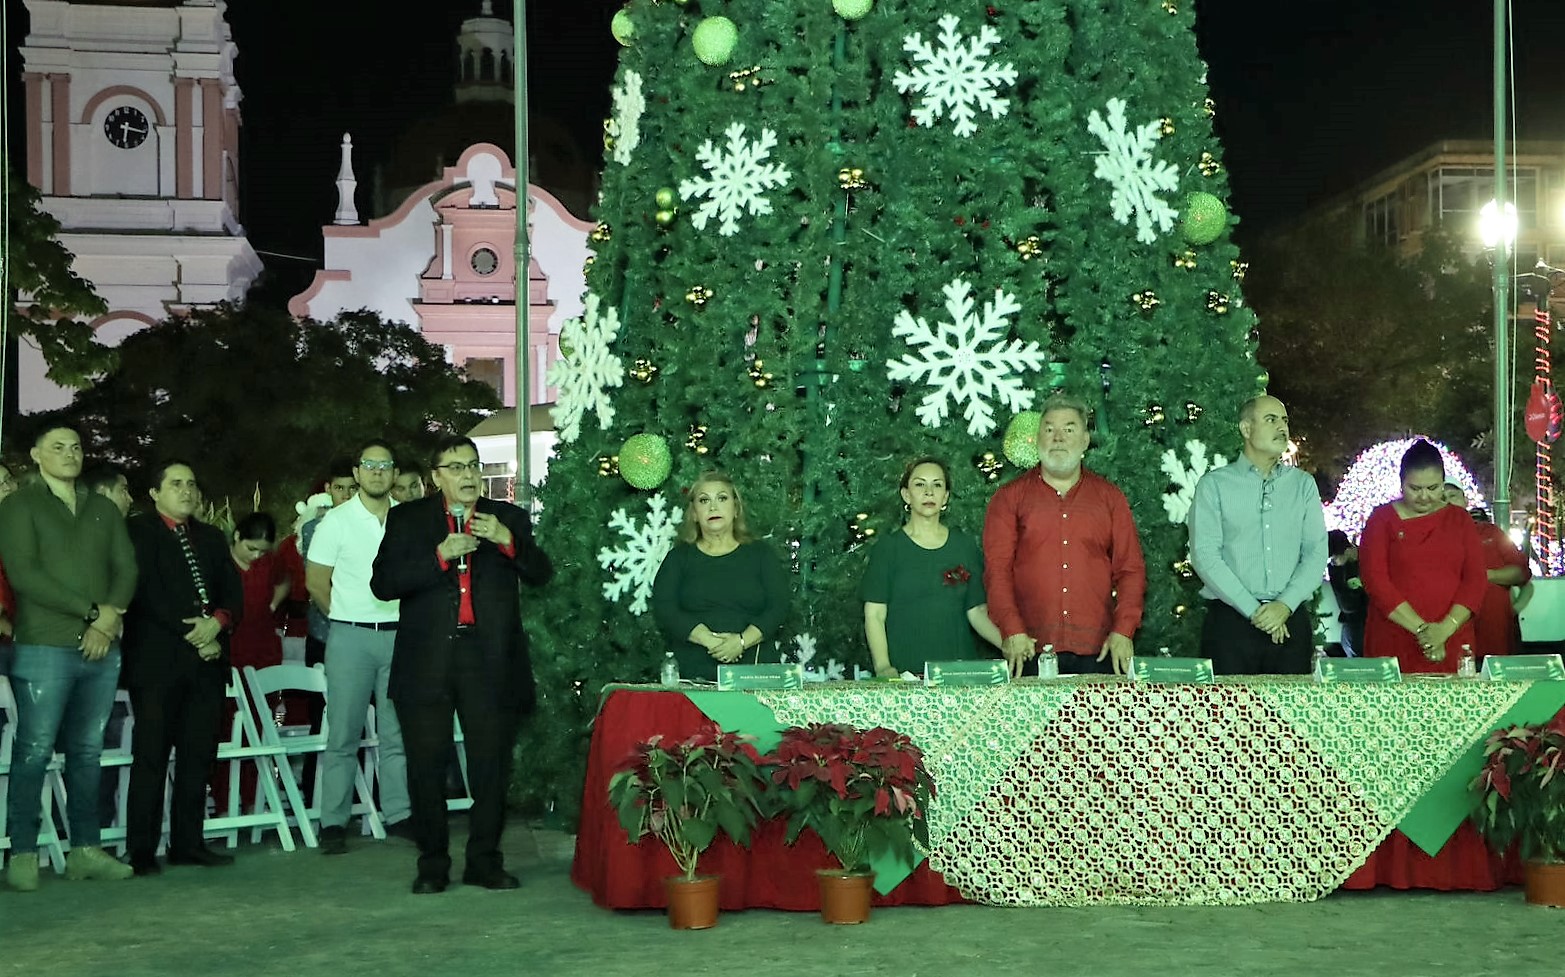 Inauguran la Navidad en San Pedro Sula con encendido del árbol en el parque central